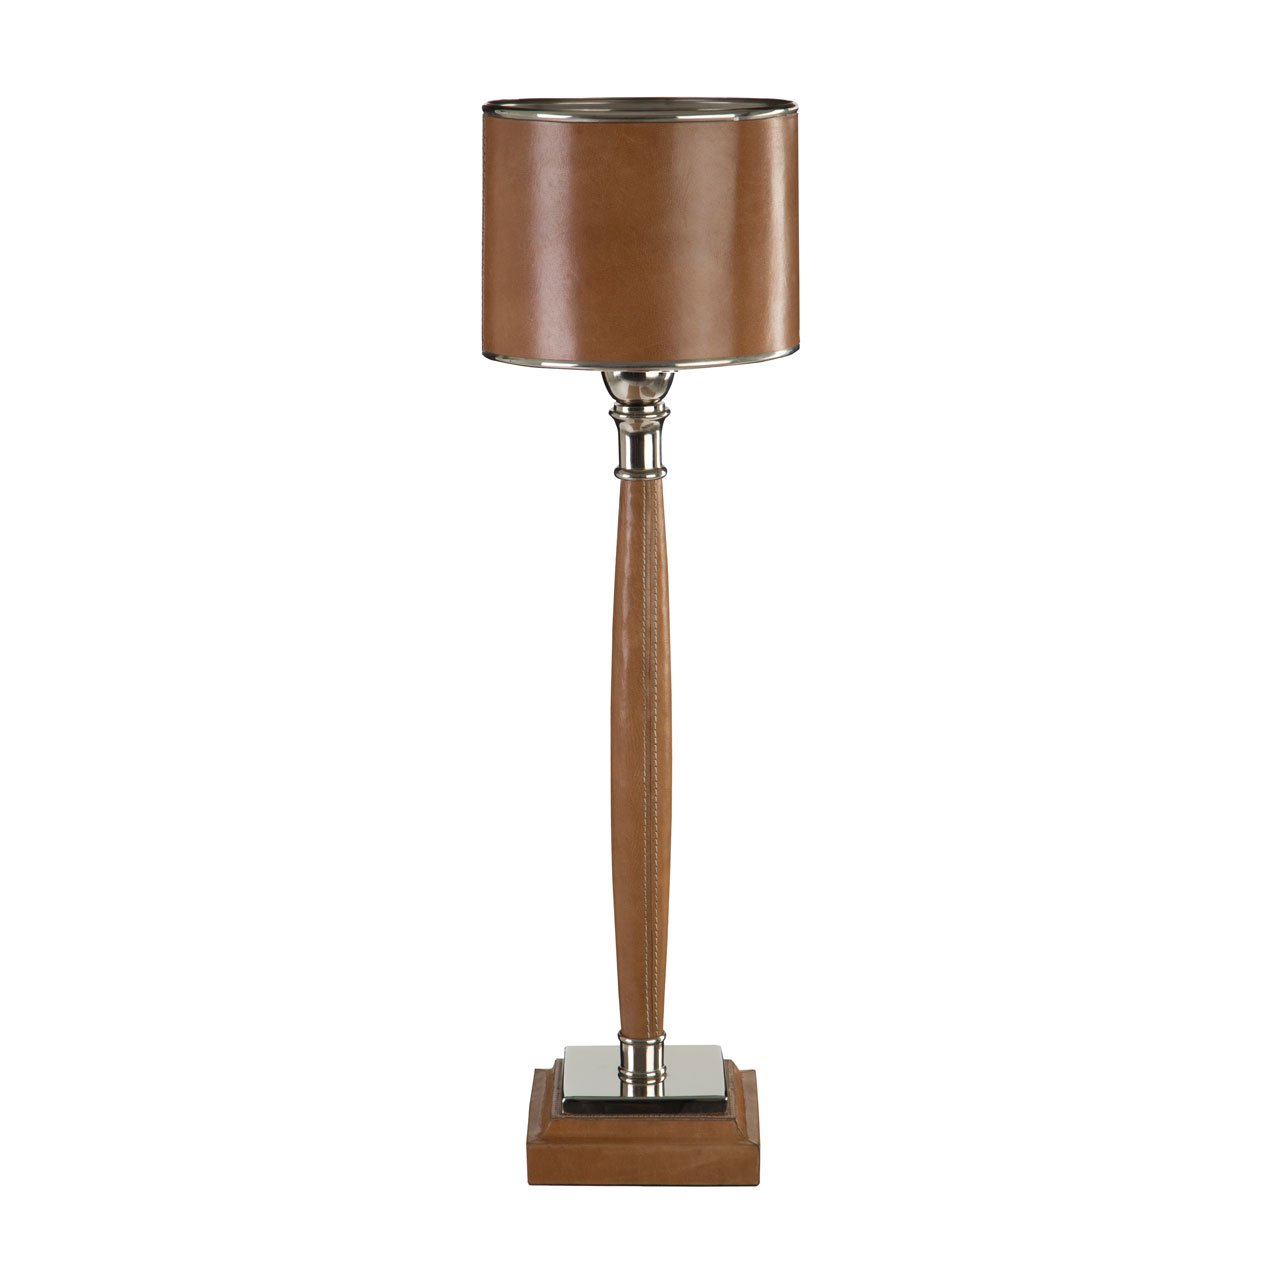 Churchill Tan Genuine Leather Table Lamp at Barnitts Online Store, UK Barnitts